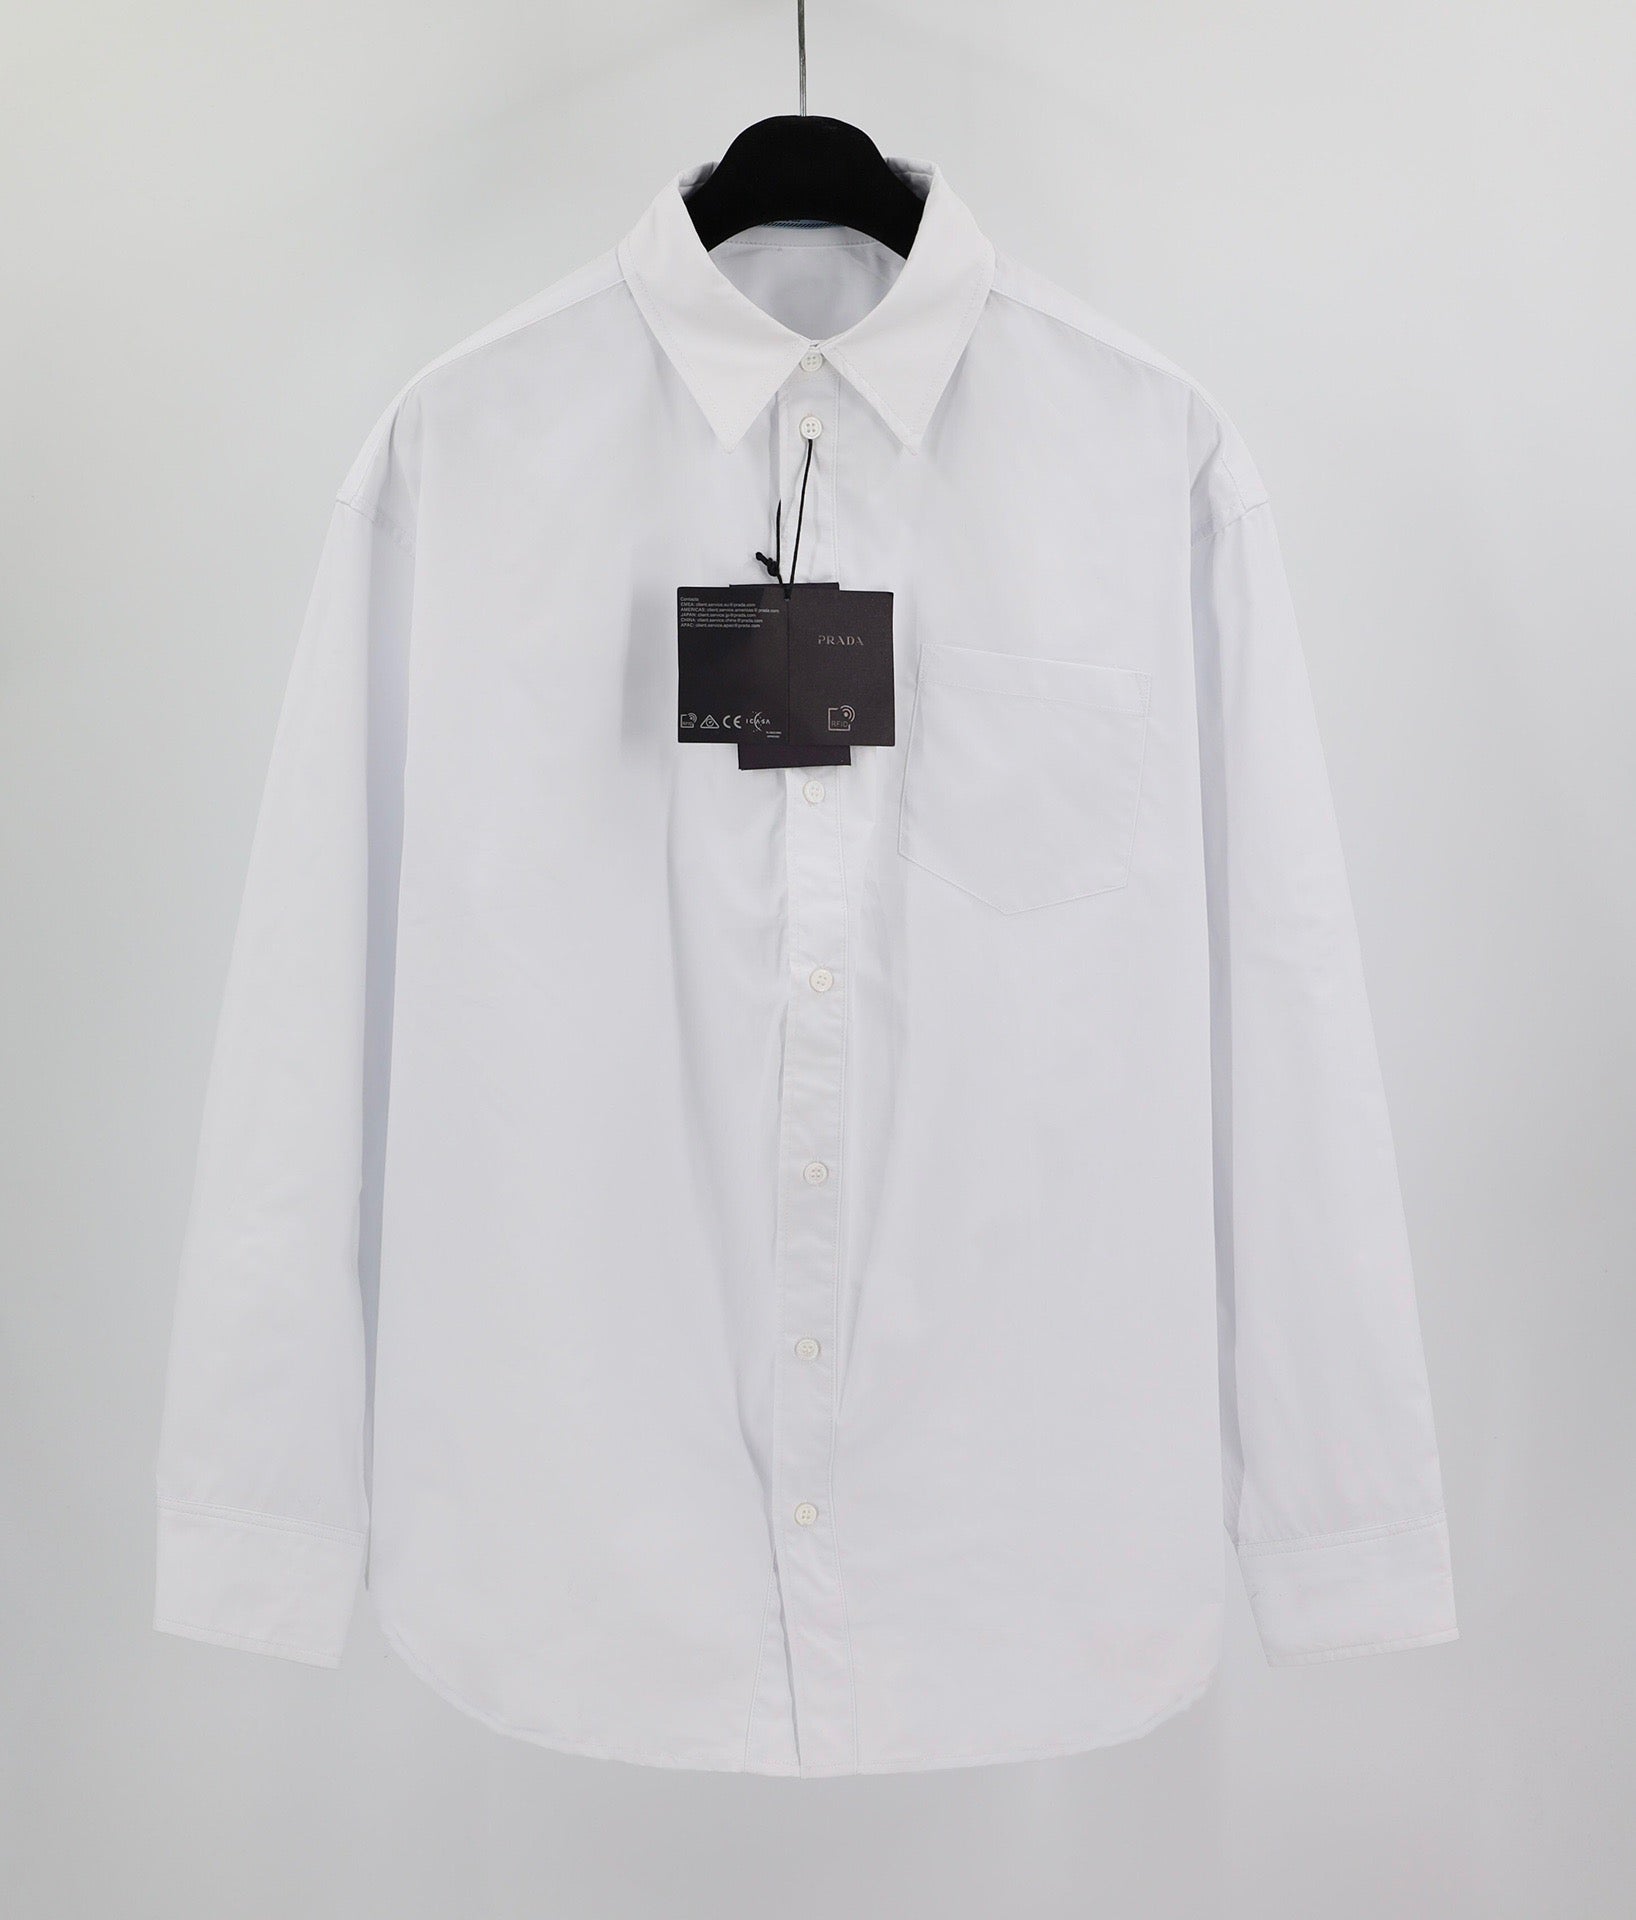 White Shirts - Size L